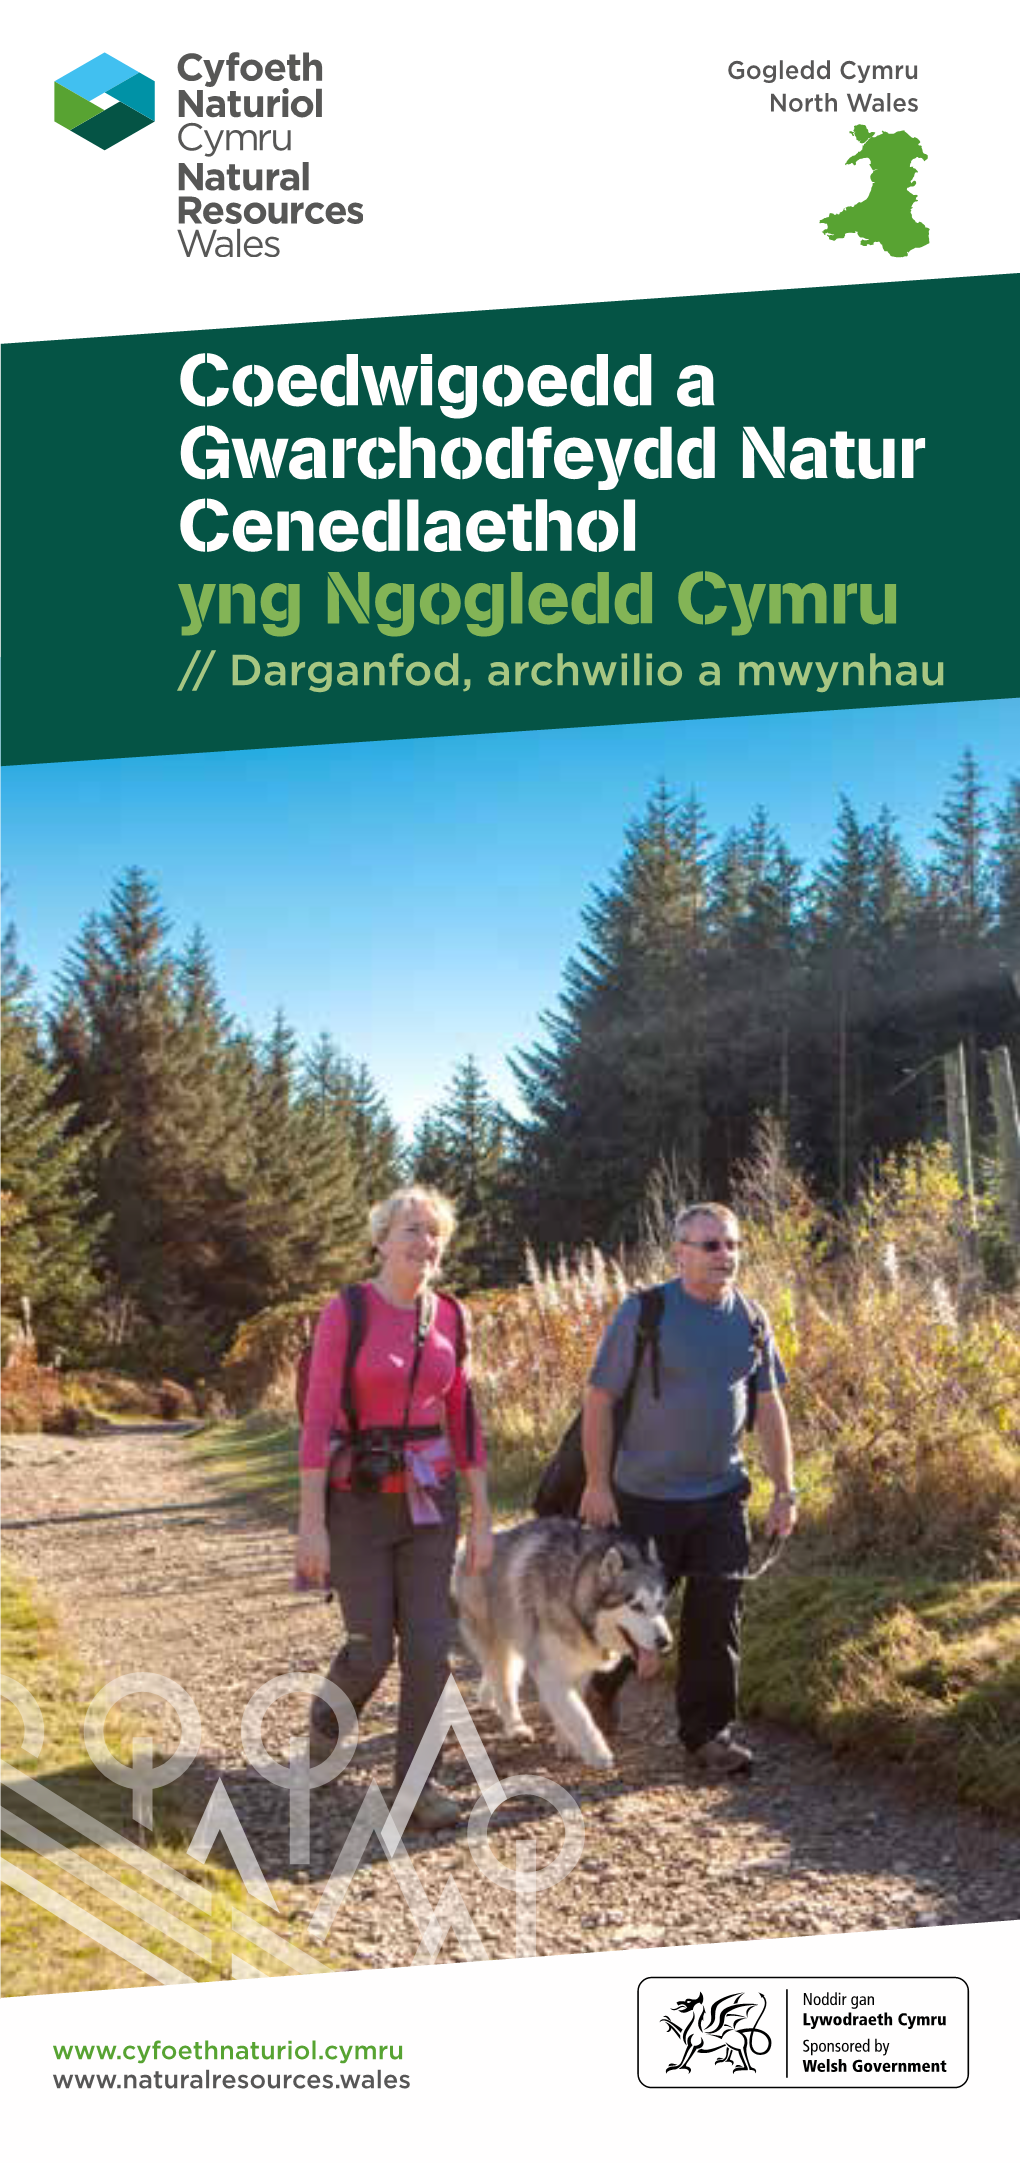 Coedwigoedd a Gwarchodfeydd Natur Cenedlaethol Yng Ngogledd Cymru // Darganfod, Archwilio a Mwynhau